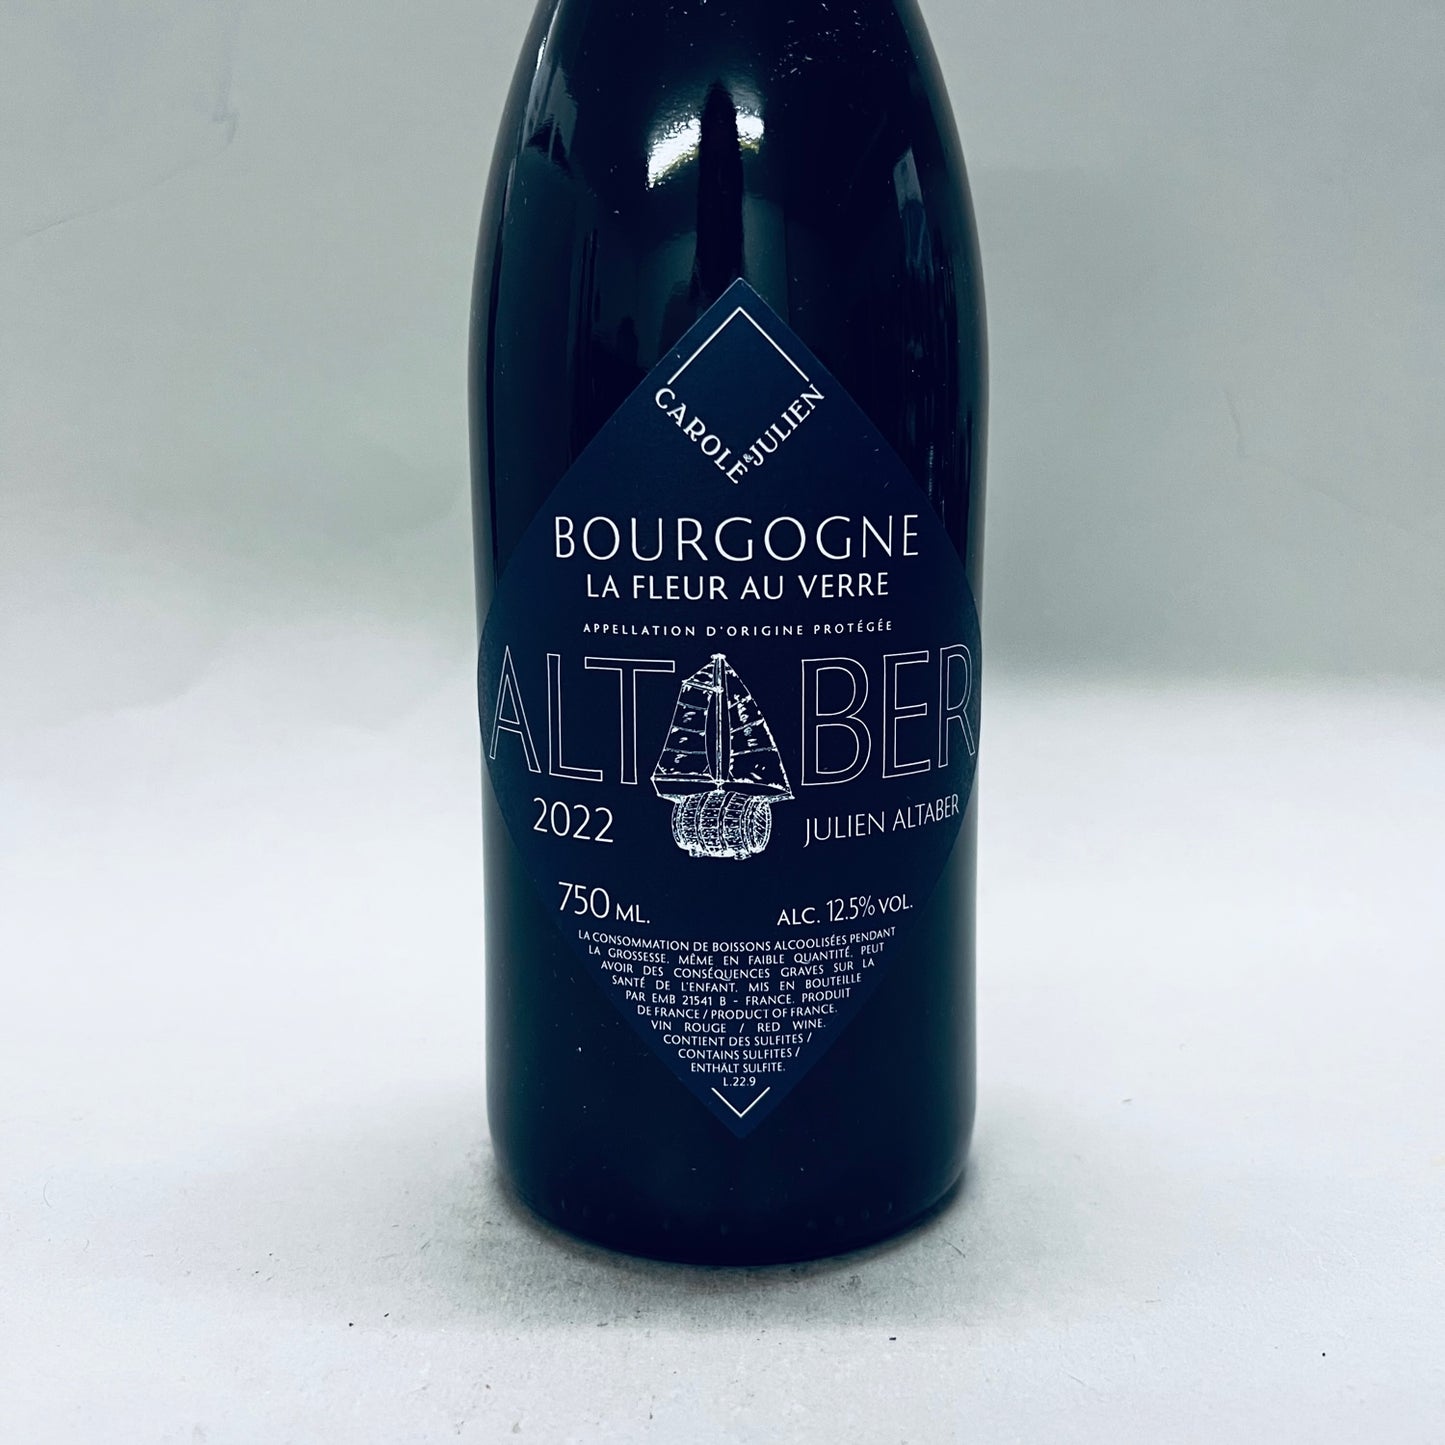 2022 Sextant (Julien Altaber) La Fleur au Verre Bourgogne Pinot Noir